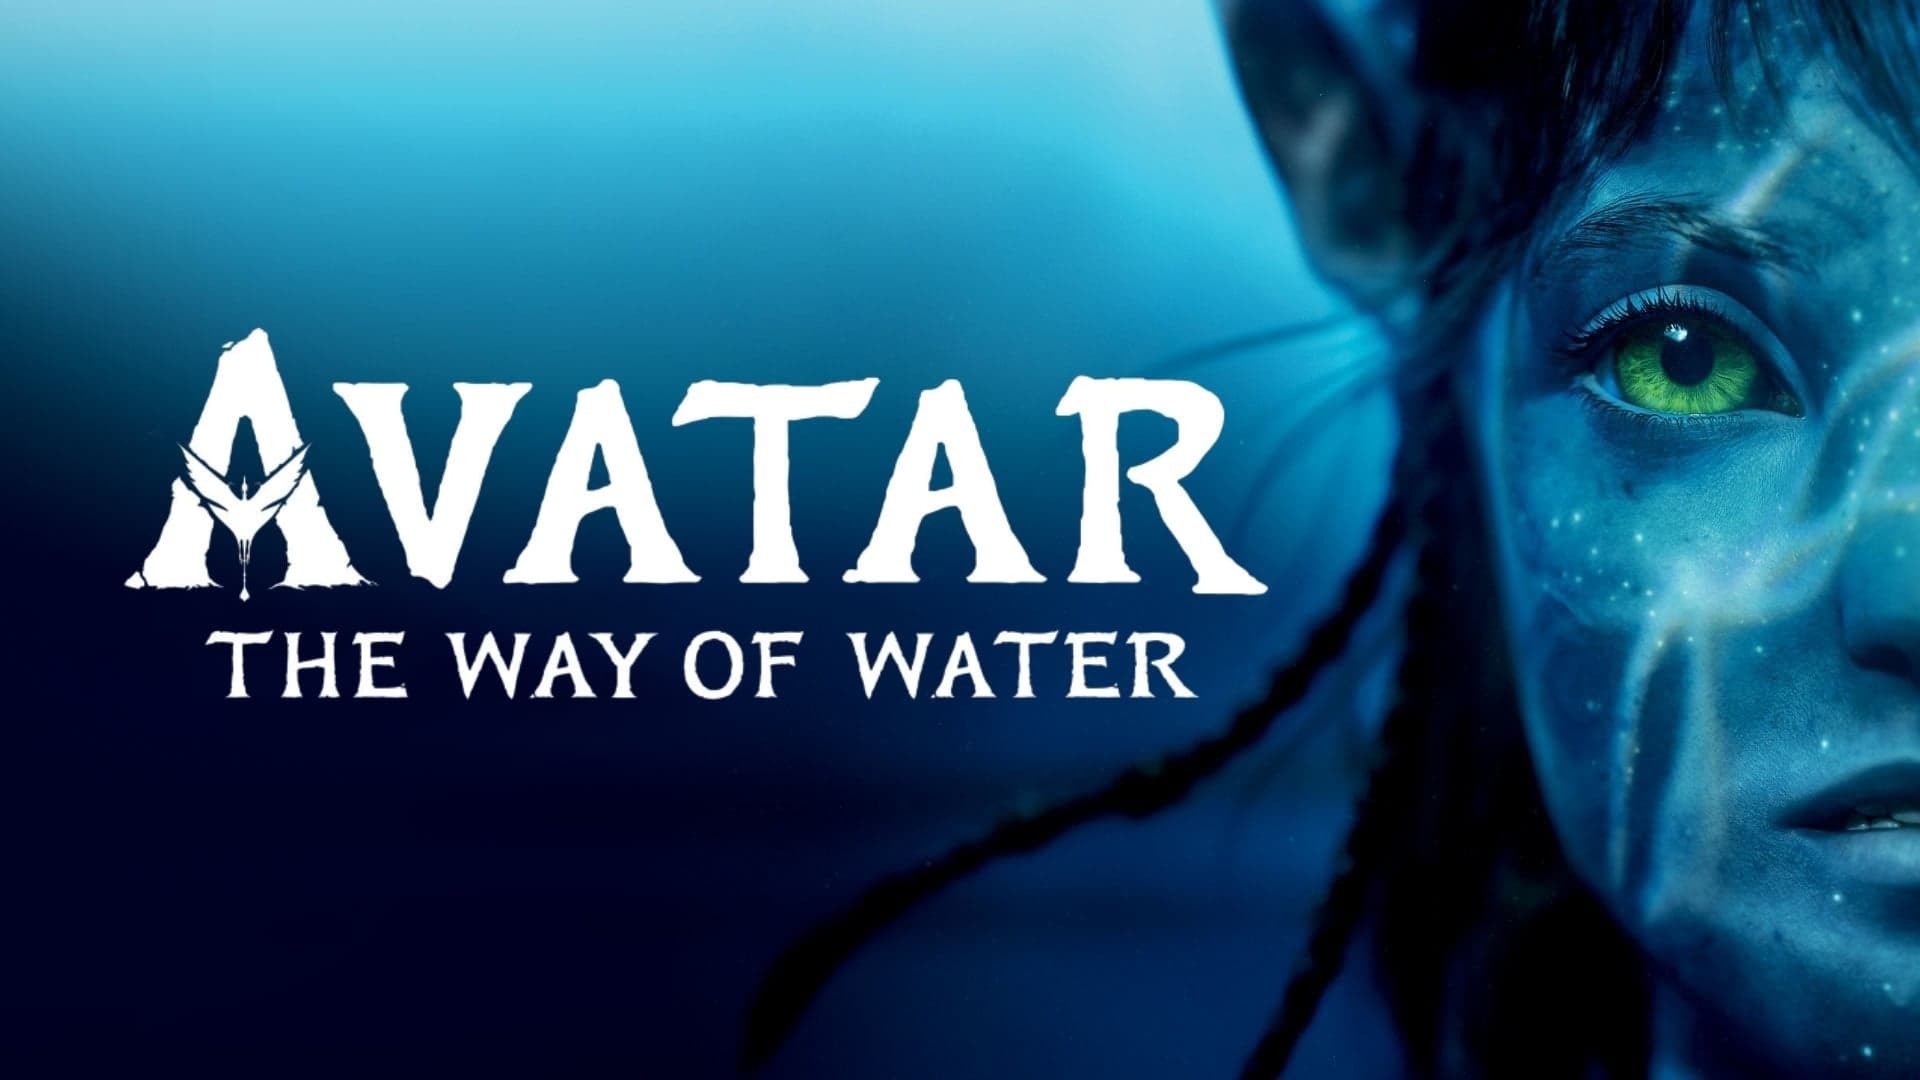 ავატარი: წყლის გზა / Avatar: The Way of Water